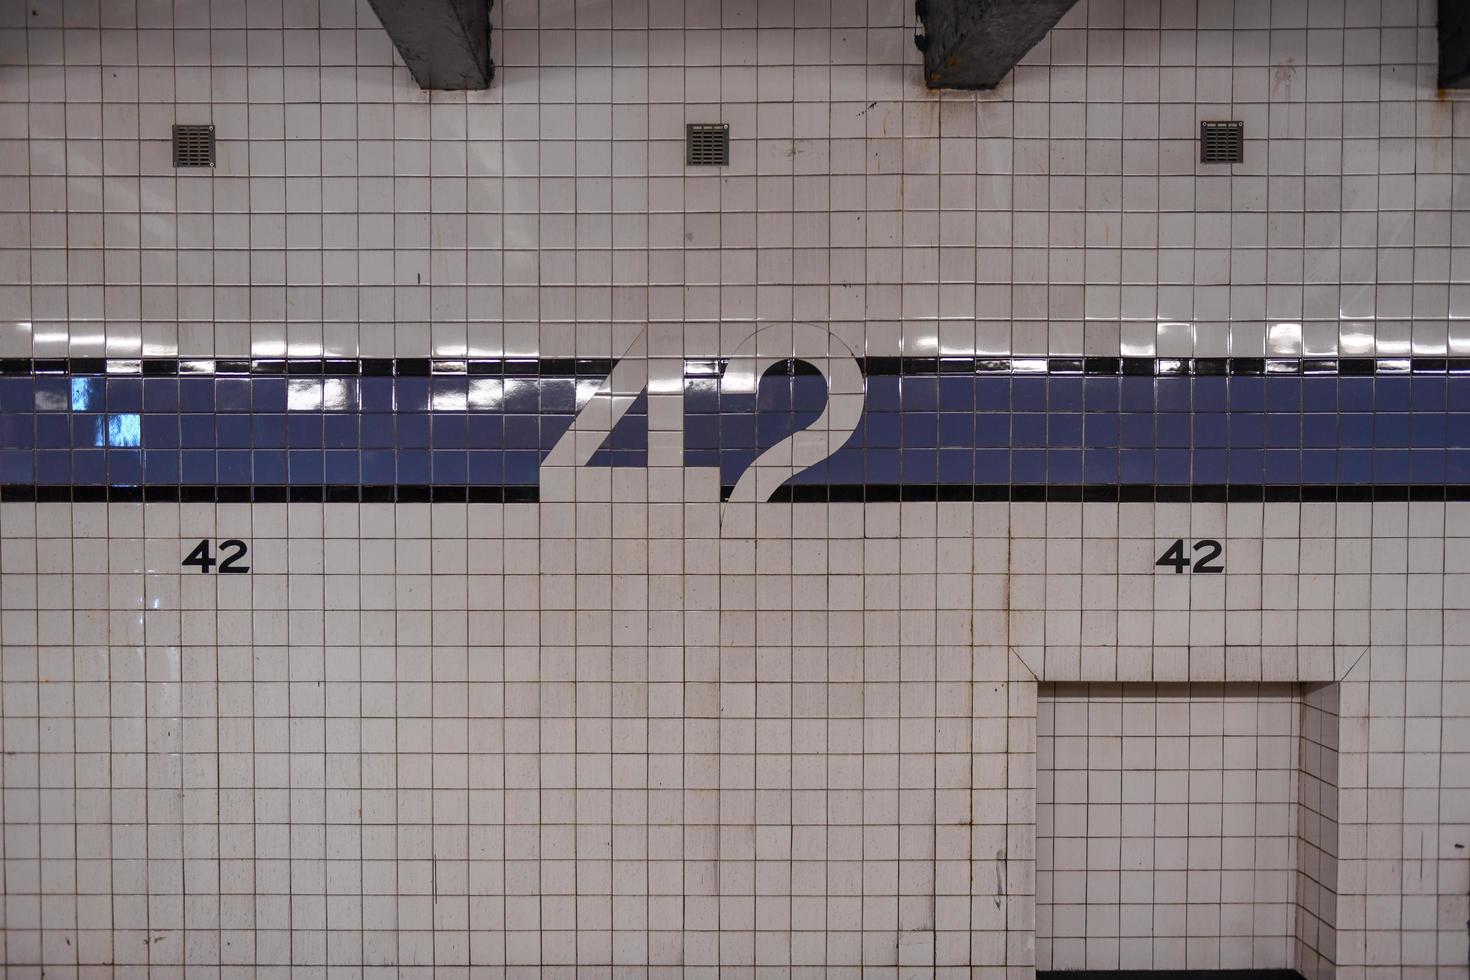 ciudad de nueva york - 20 de abril de 2018 - estación de metro 42nd street times square a lo largo de la línea de la octava avenida en la ciudad de nueva york. foto